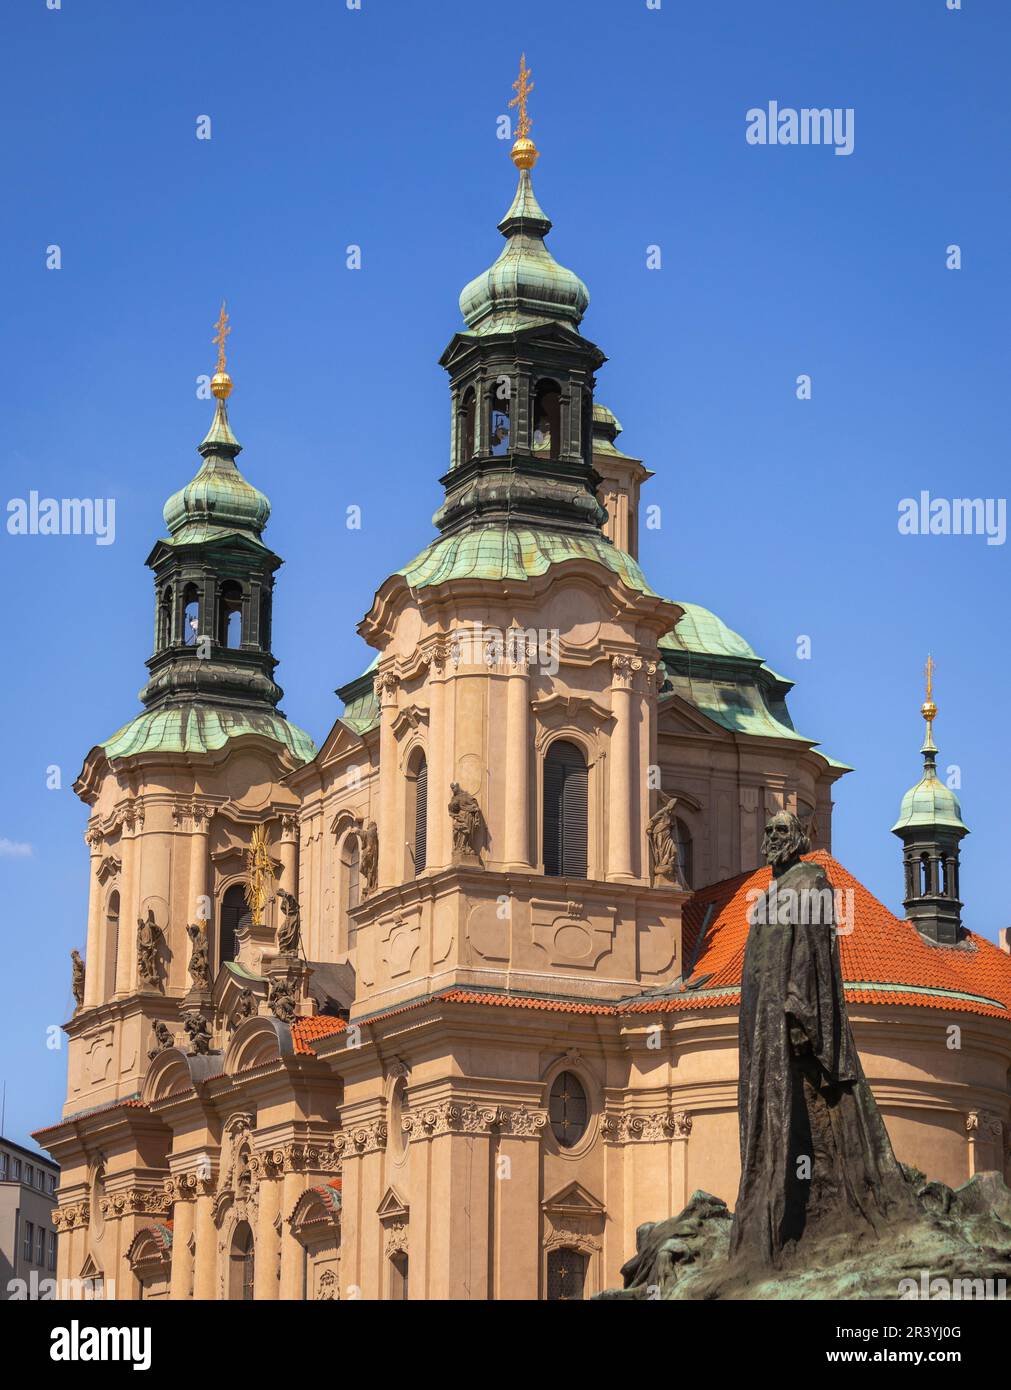 PLAZA DE LA CIUDAD VIEJA, PRAGA, REPÚBLICA CHECA - Jan Hus estatua conmemorativa a la derecha, y la Iglesia de San Nicolás. Foto de stock